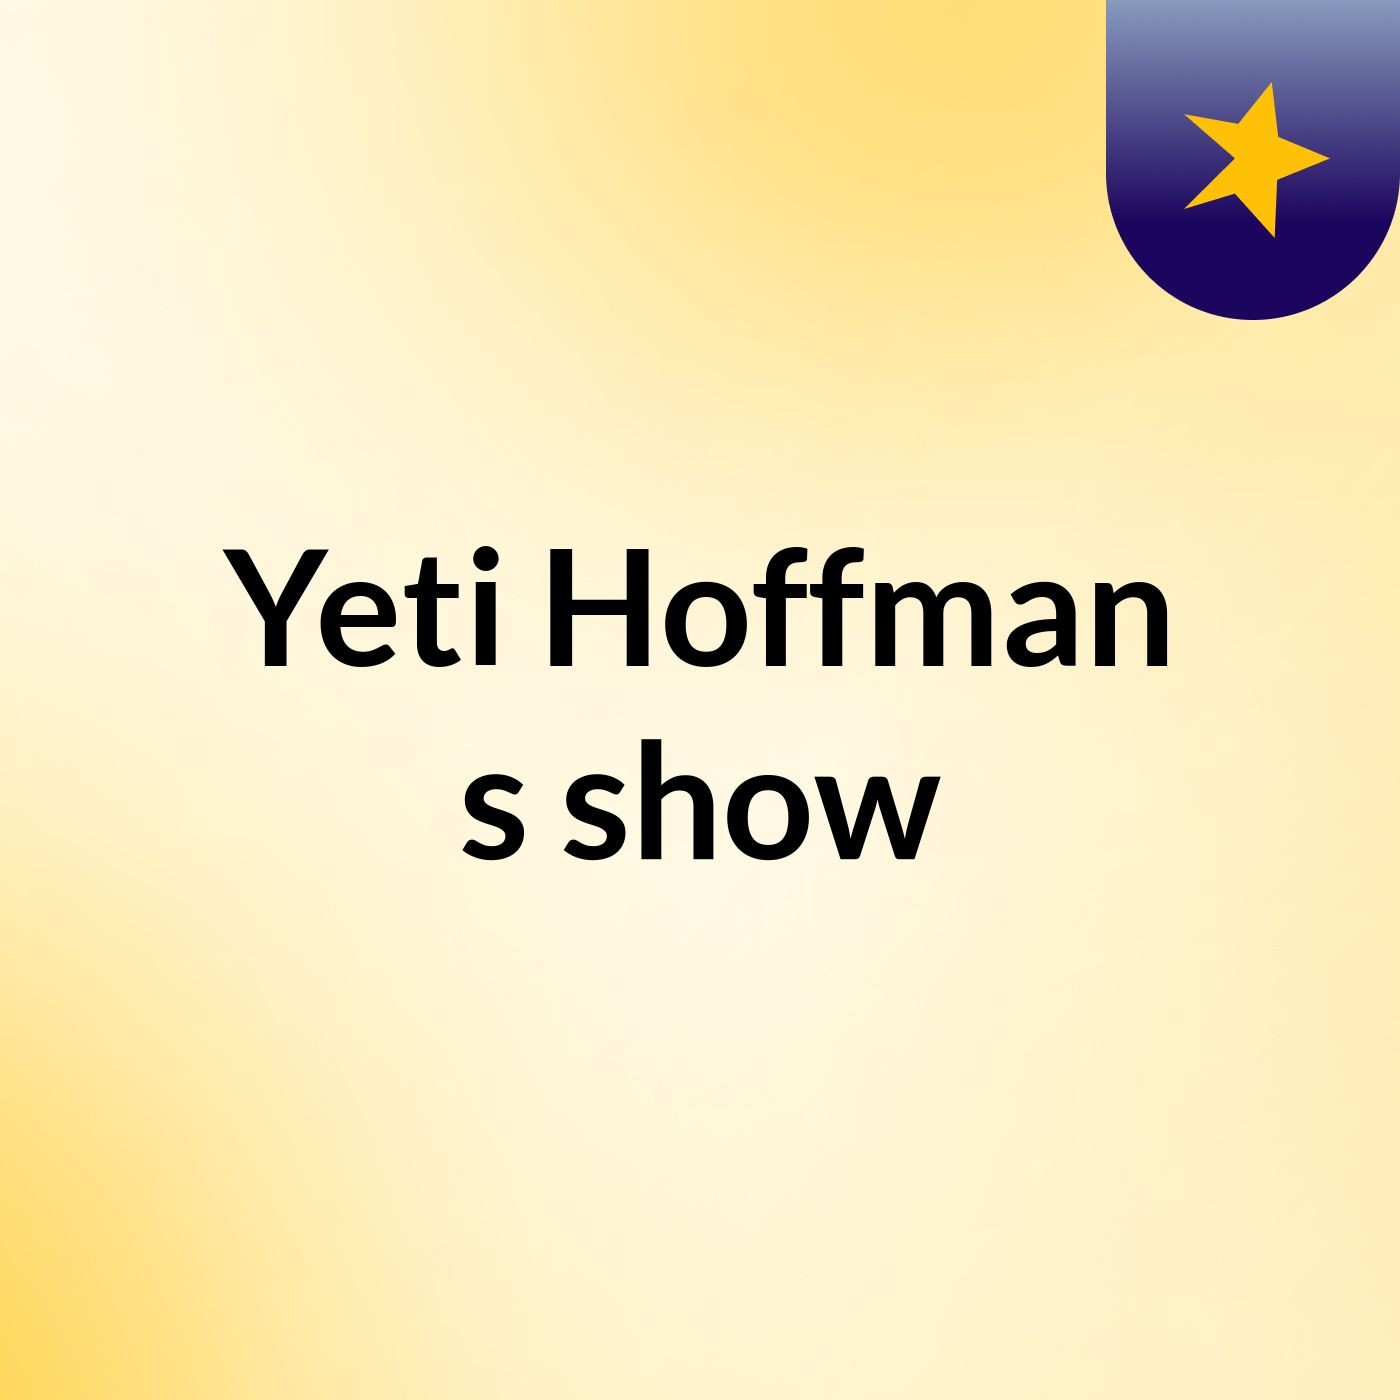 Yeti Hoffman's show